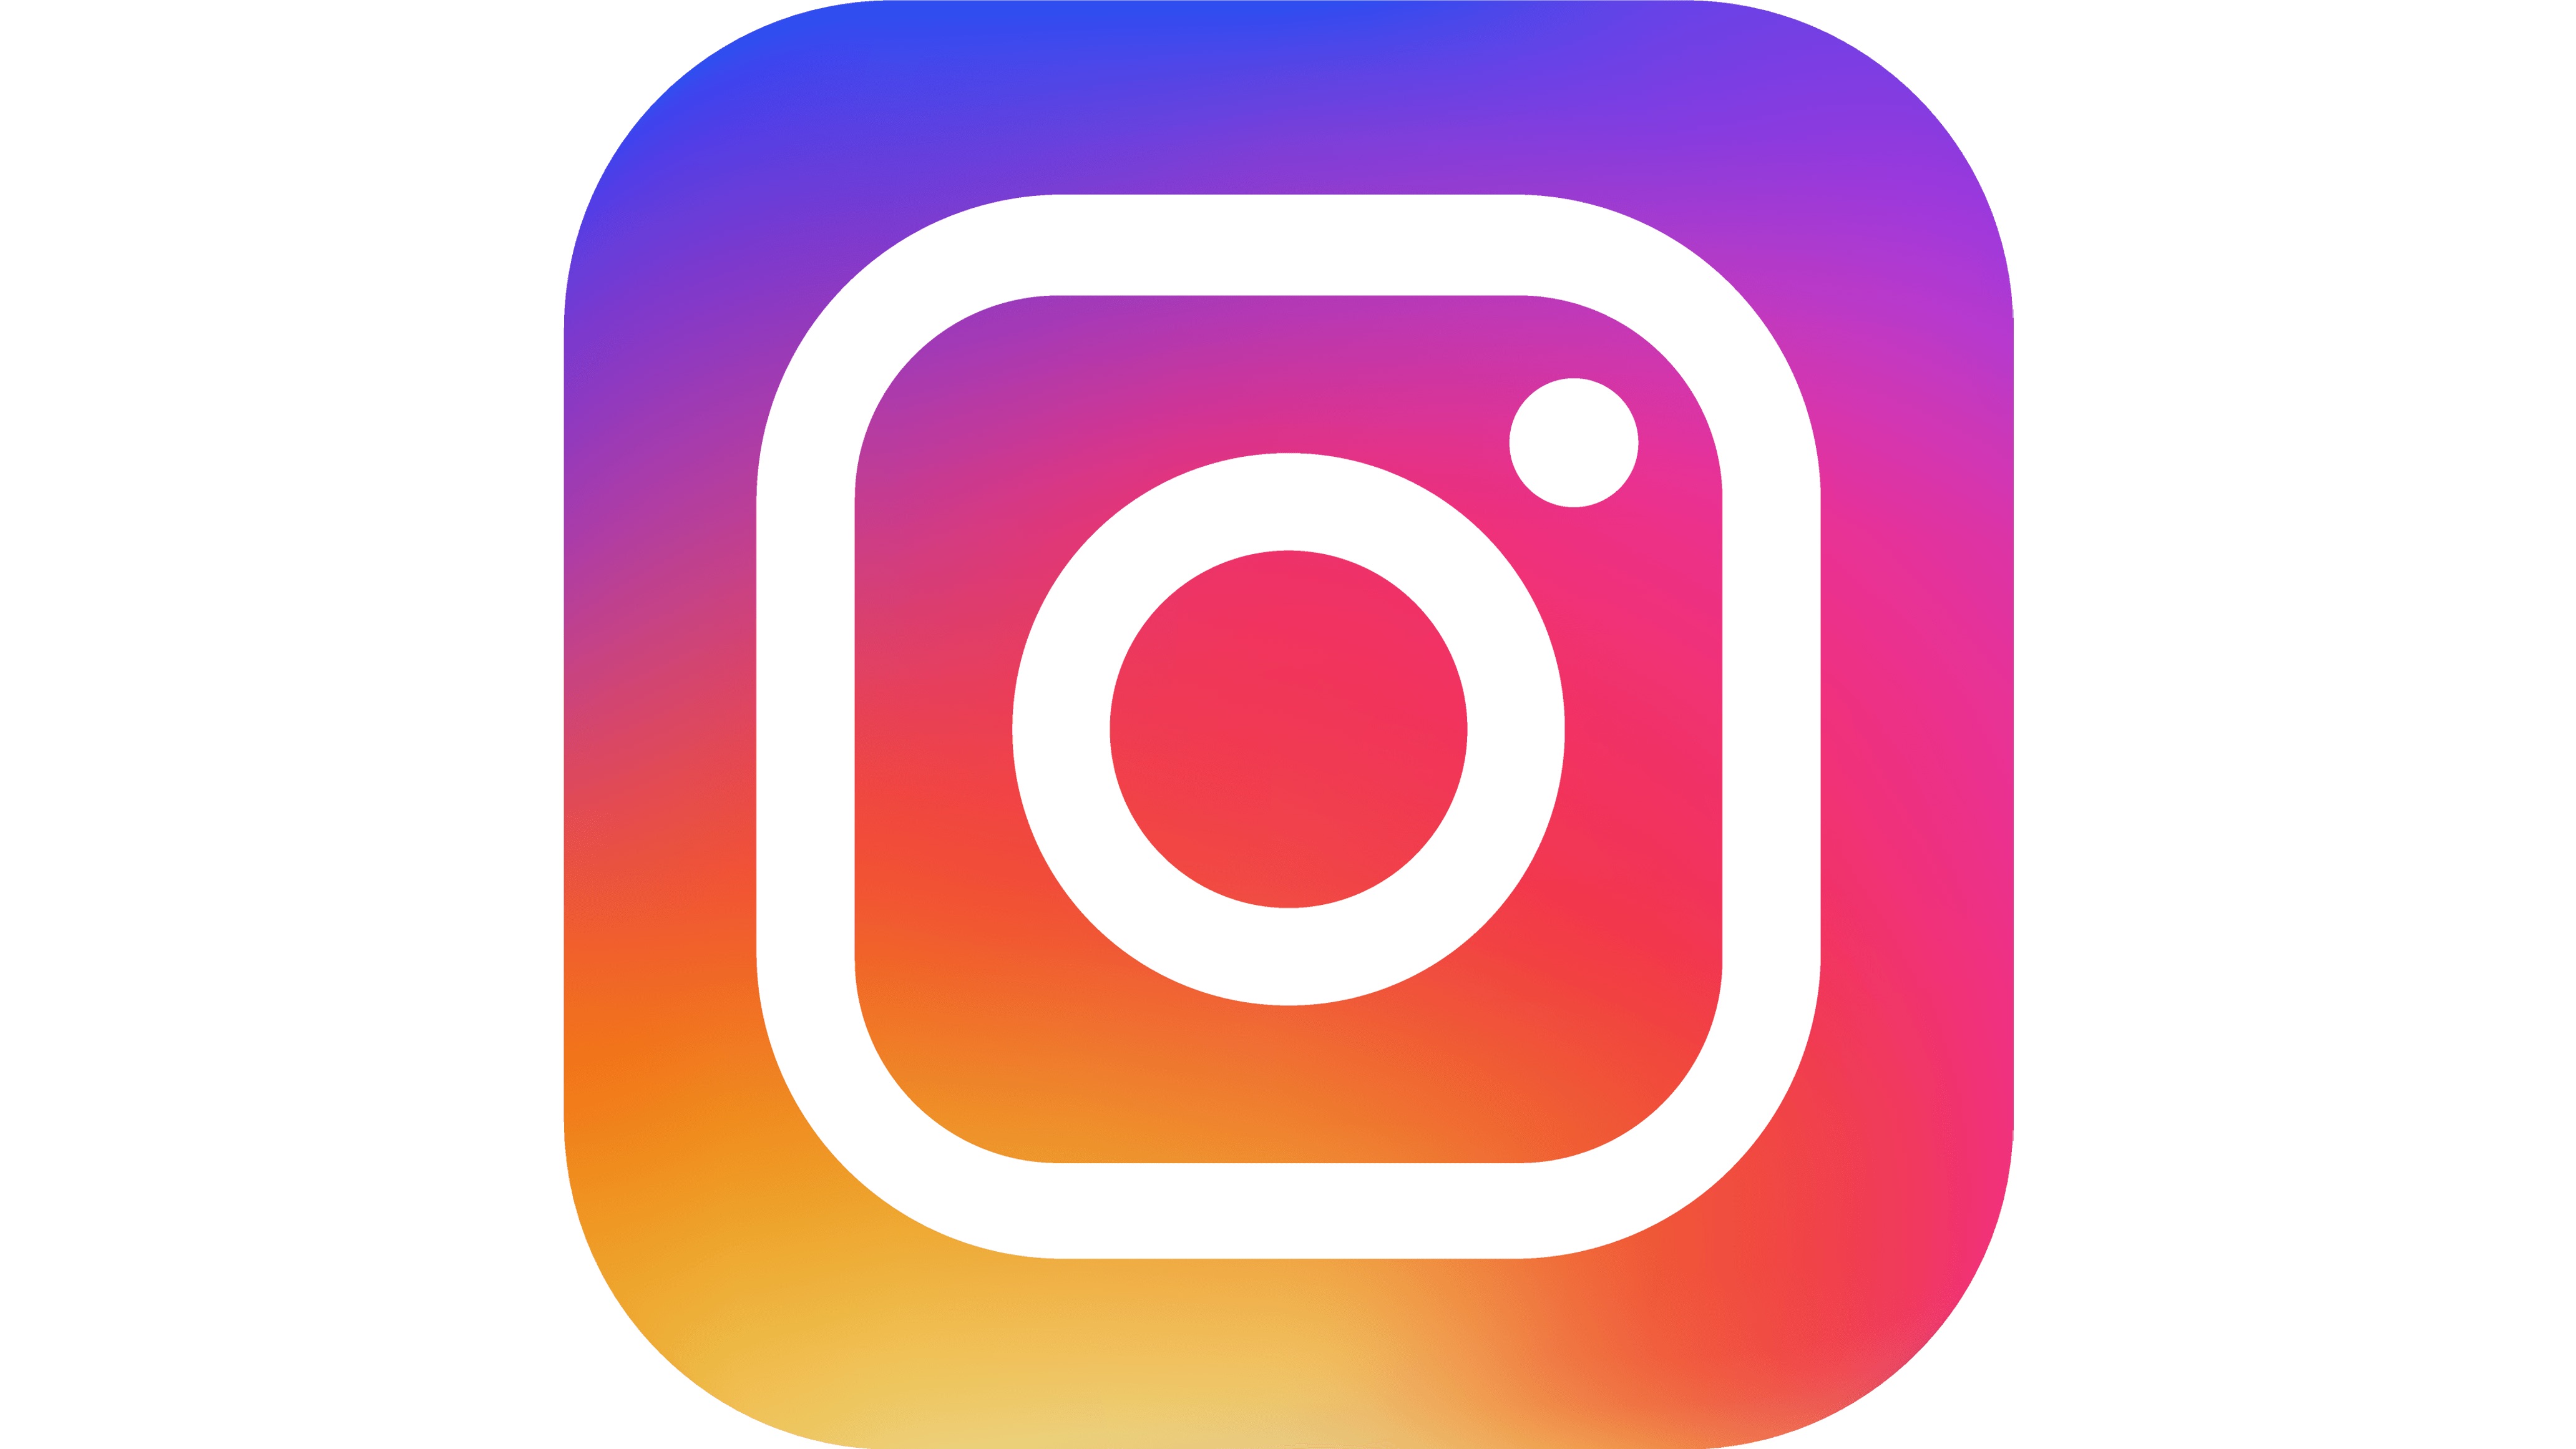 Instagram, la red social de fotografía por excelencia, cambió en 2016 su logotipo para destacar los colores, los cuales son importantes dentro de la app.